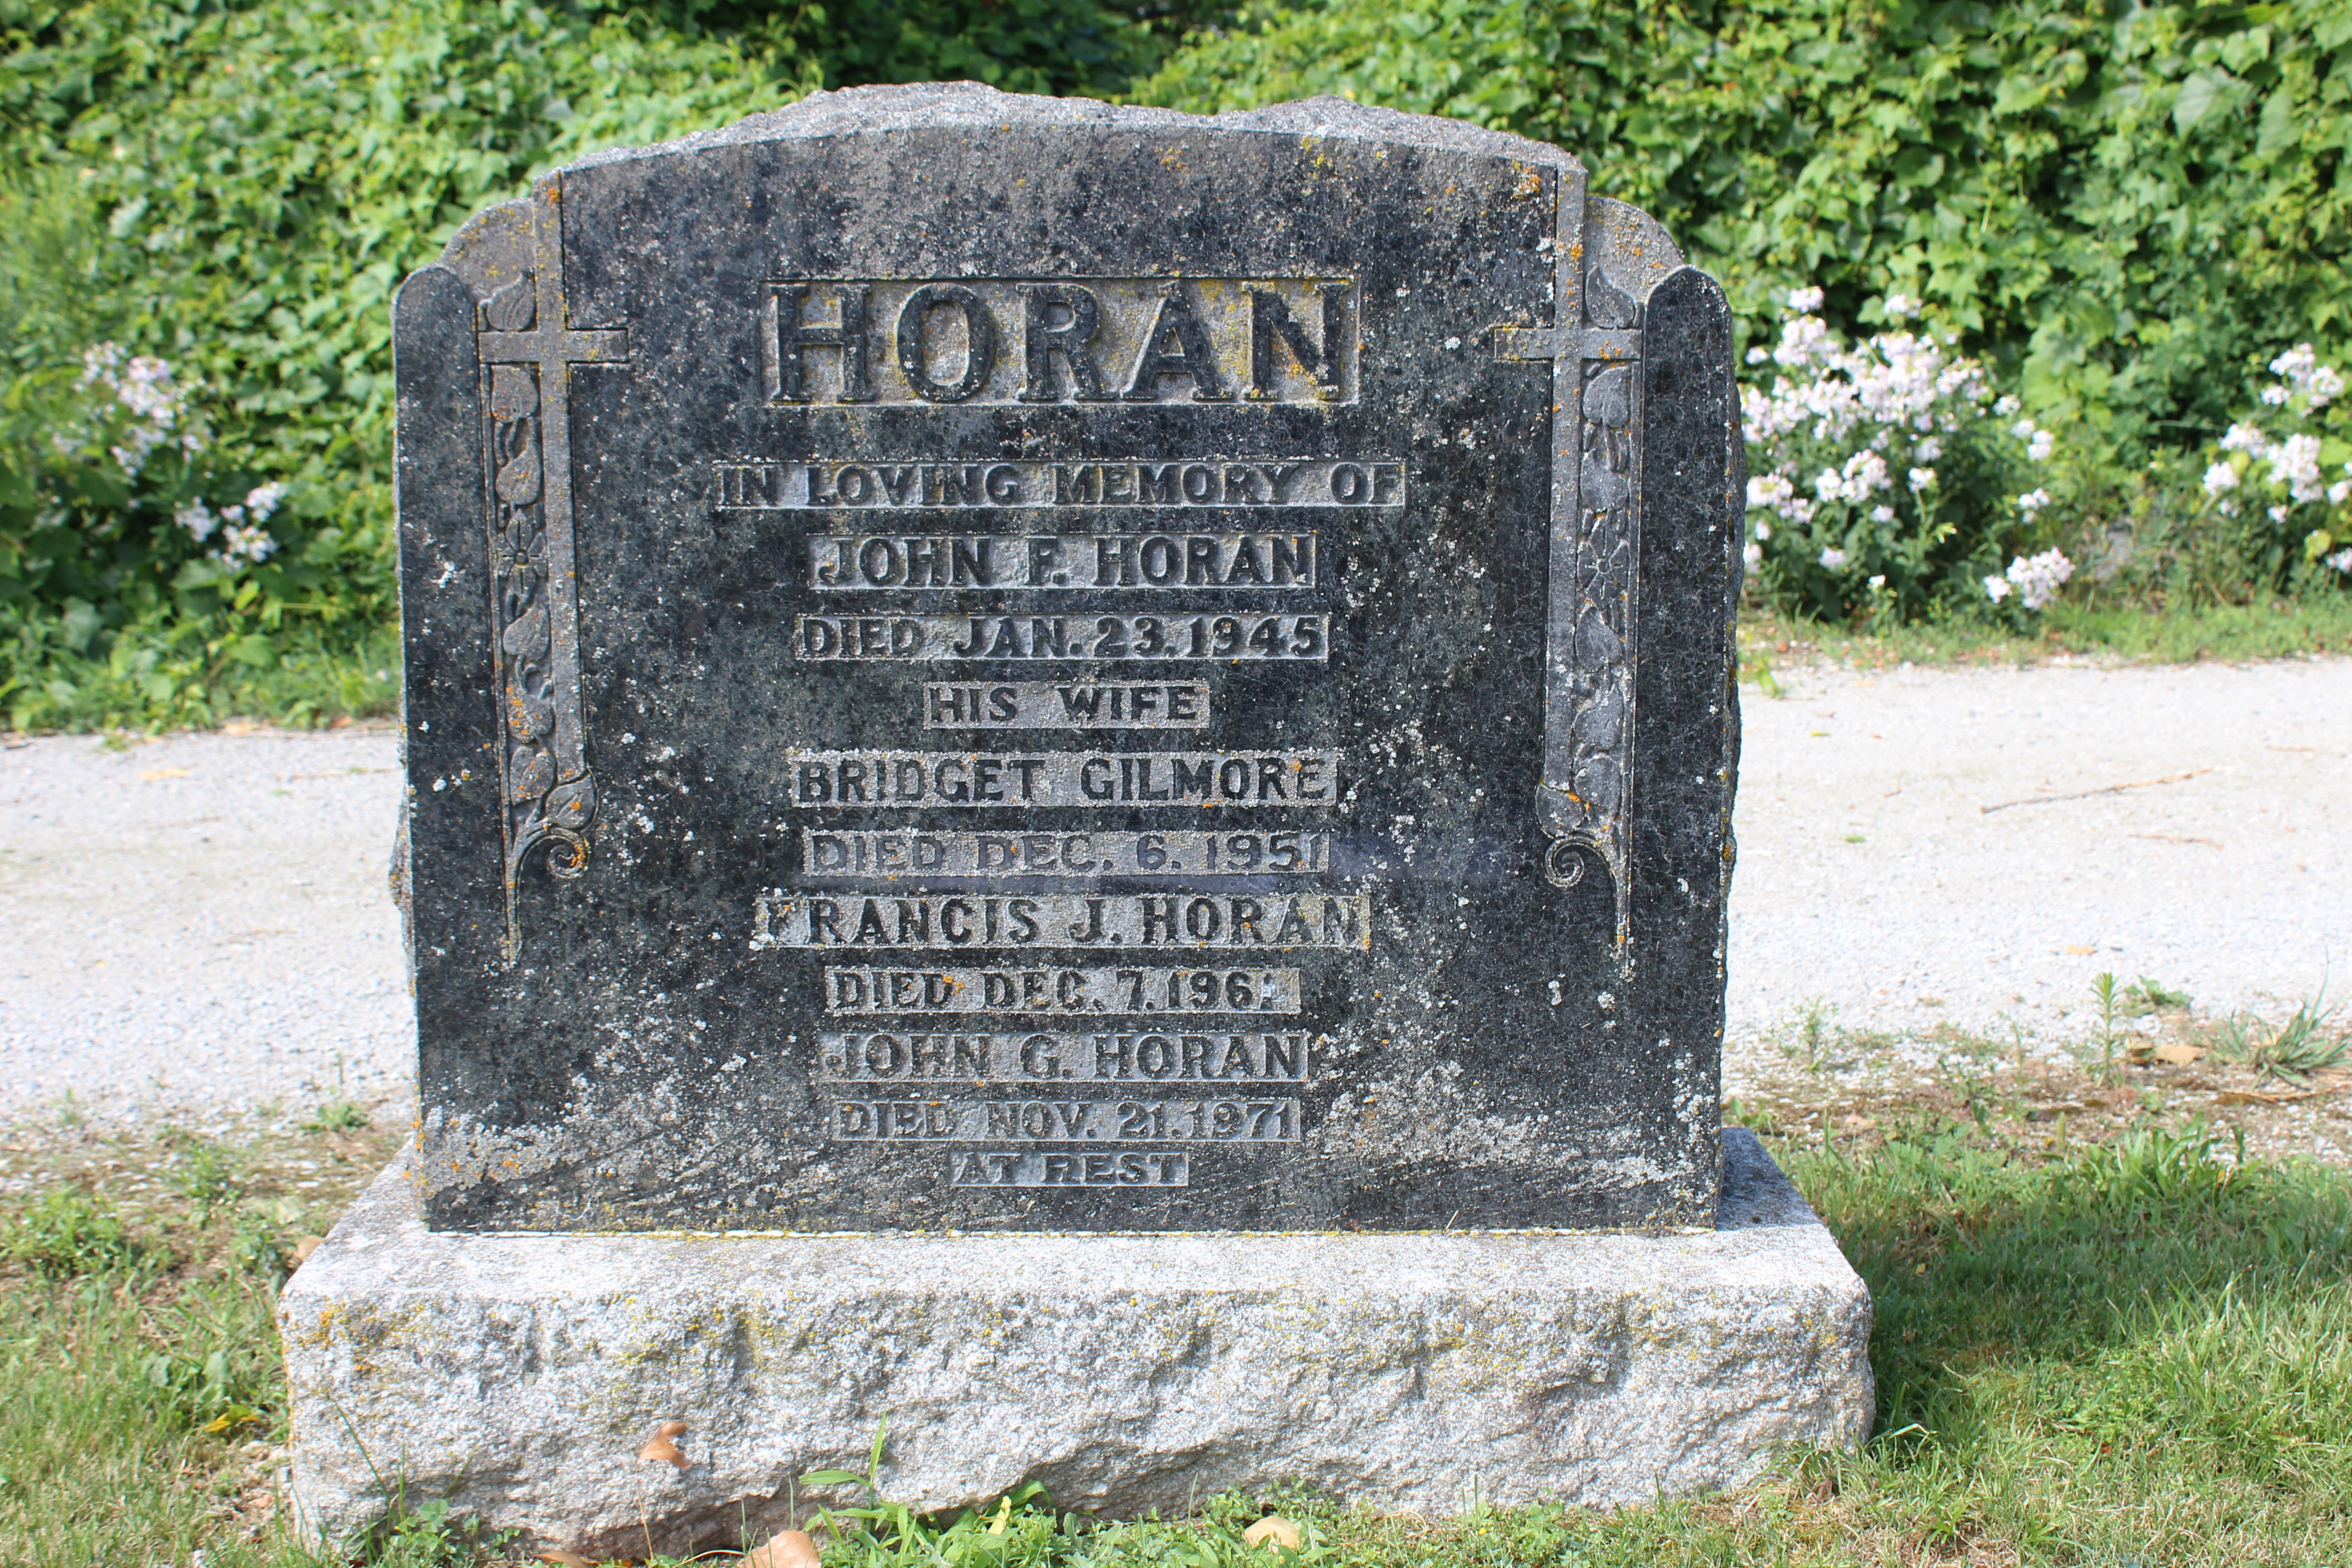 John Horan, Bridget Gilmore, Francis Horan and John Horan